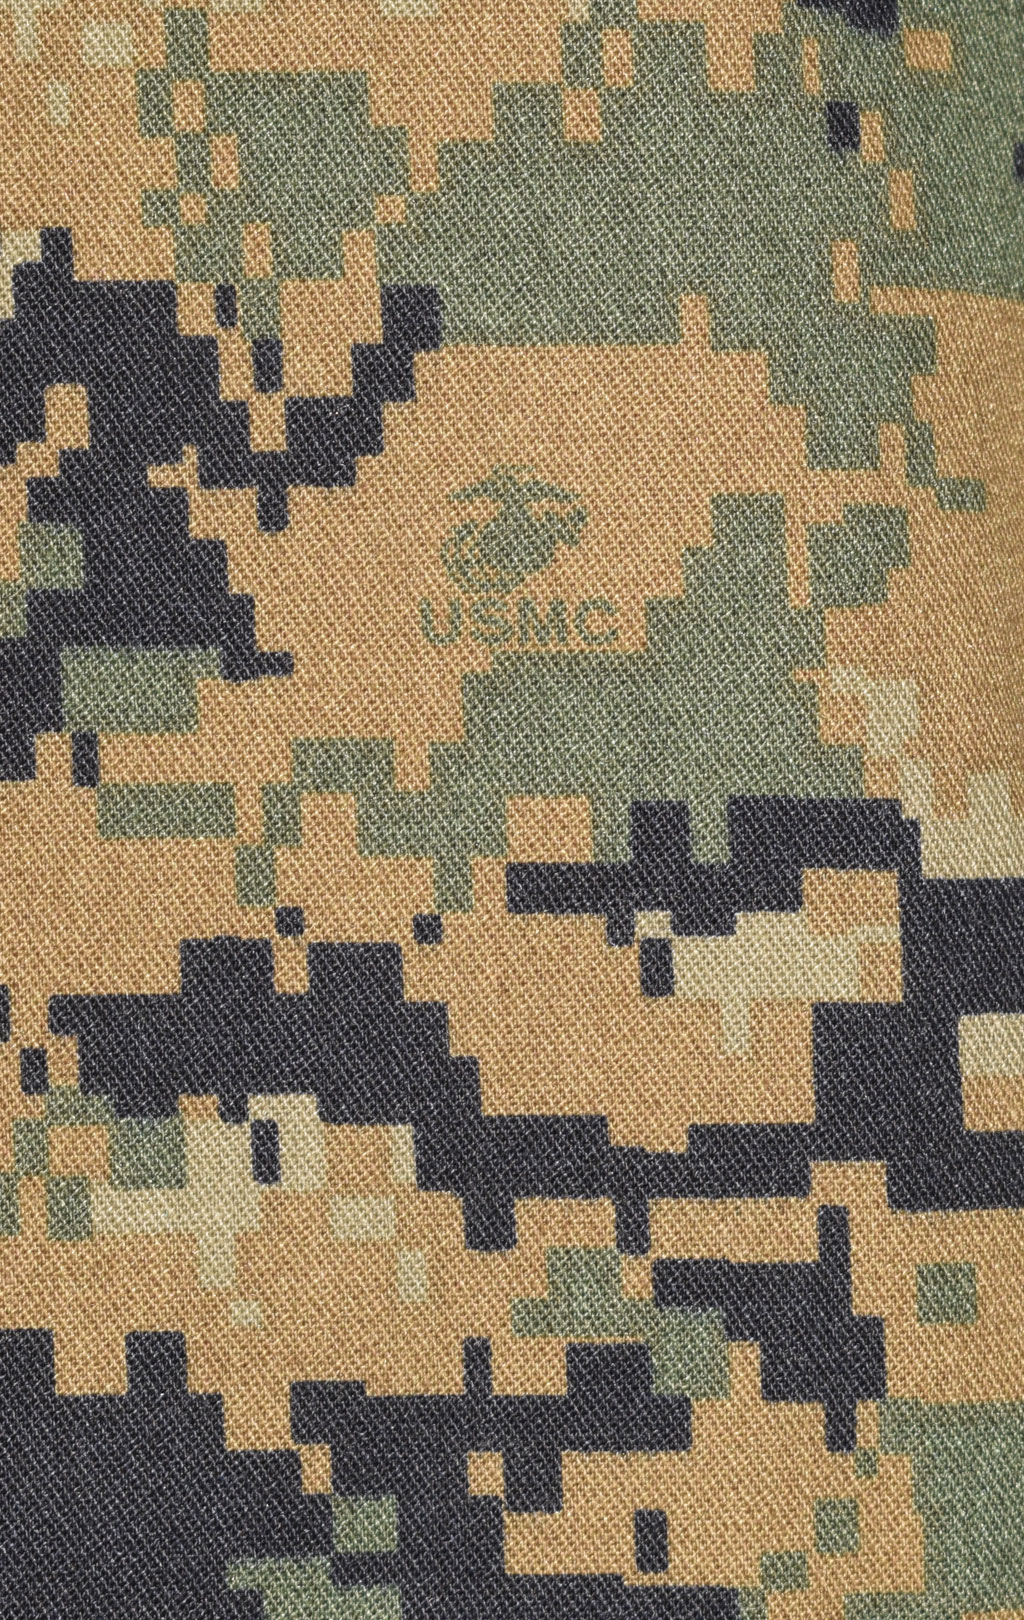 Китель полевой USMC marpat woodland б/у США